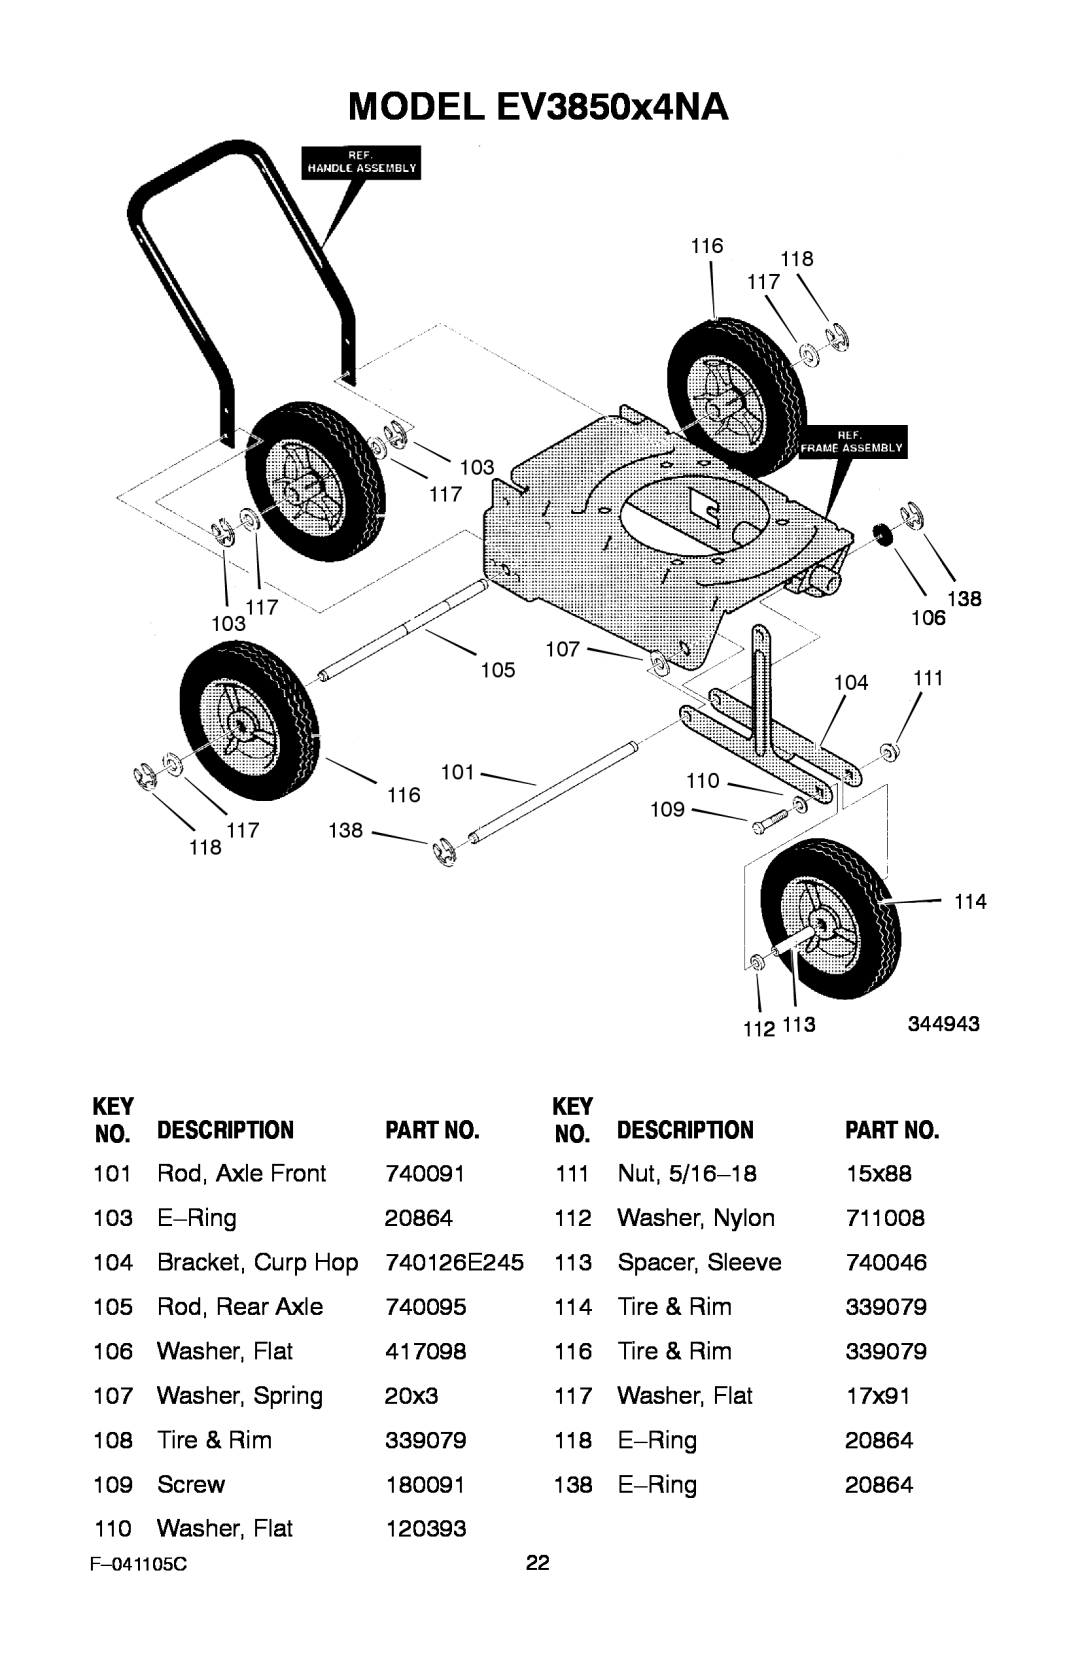 Murray manual MODEL EV3850x4NA, Description 